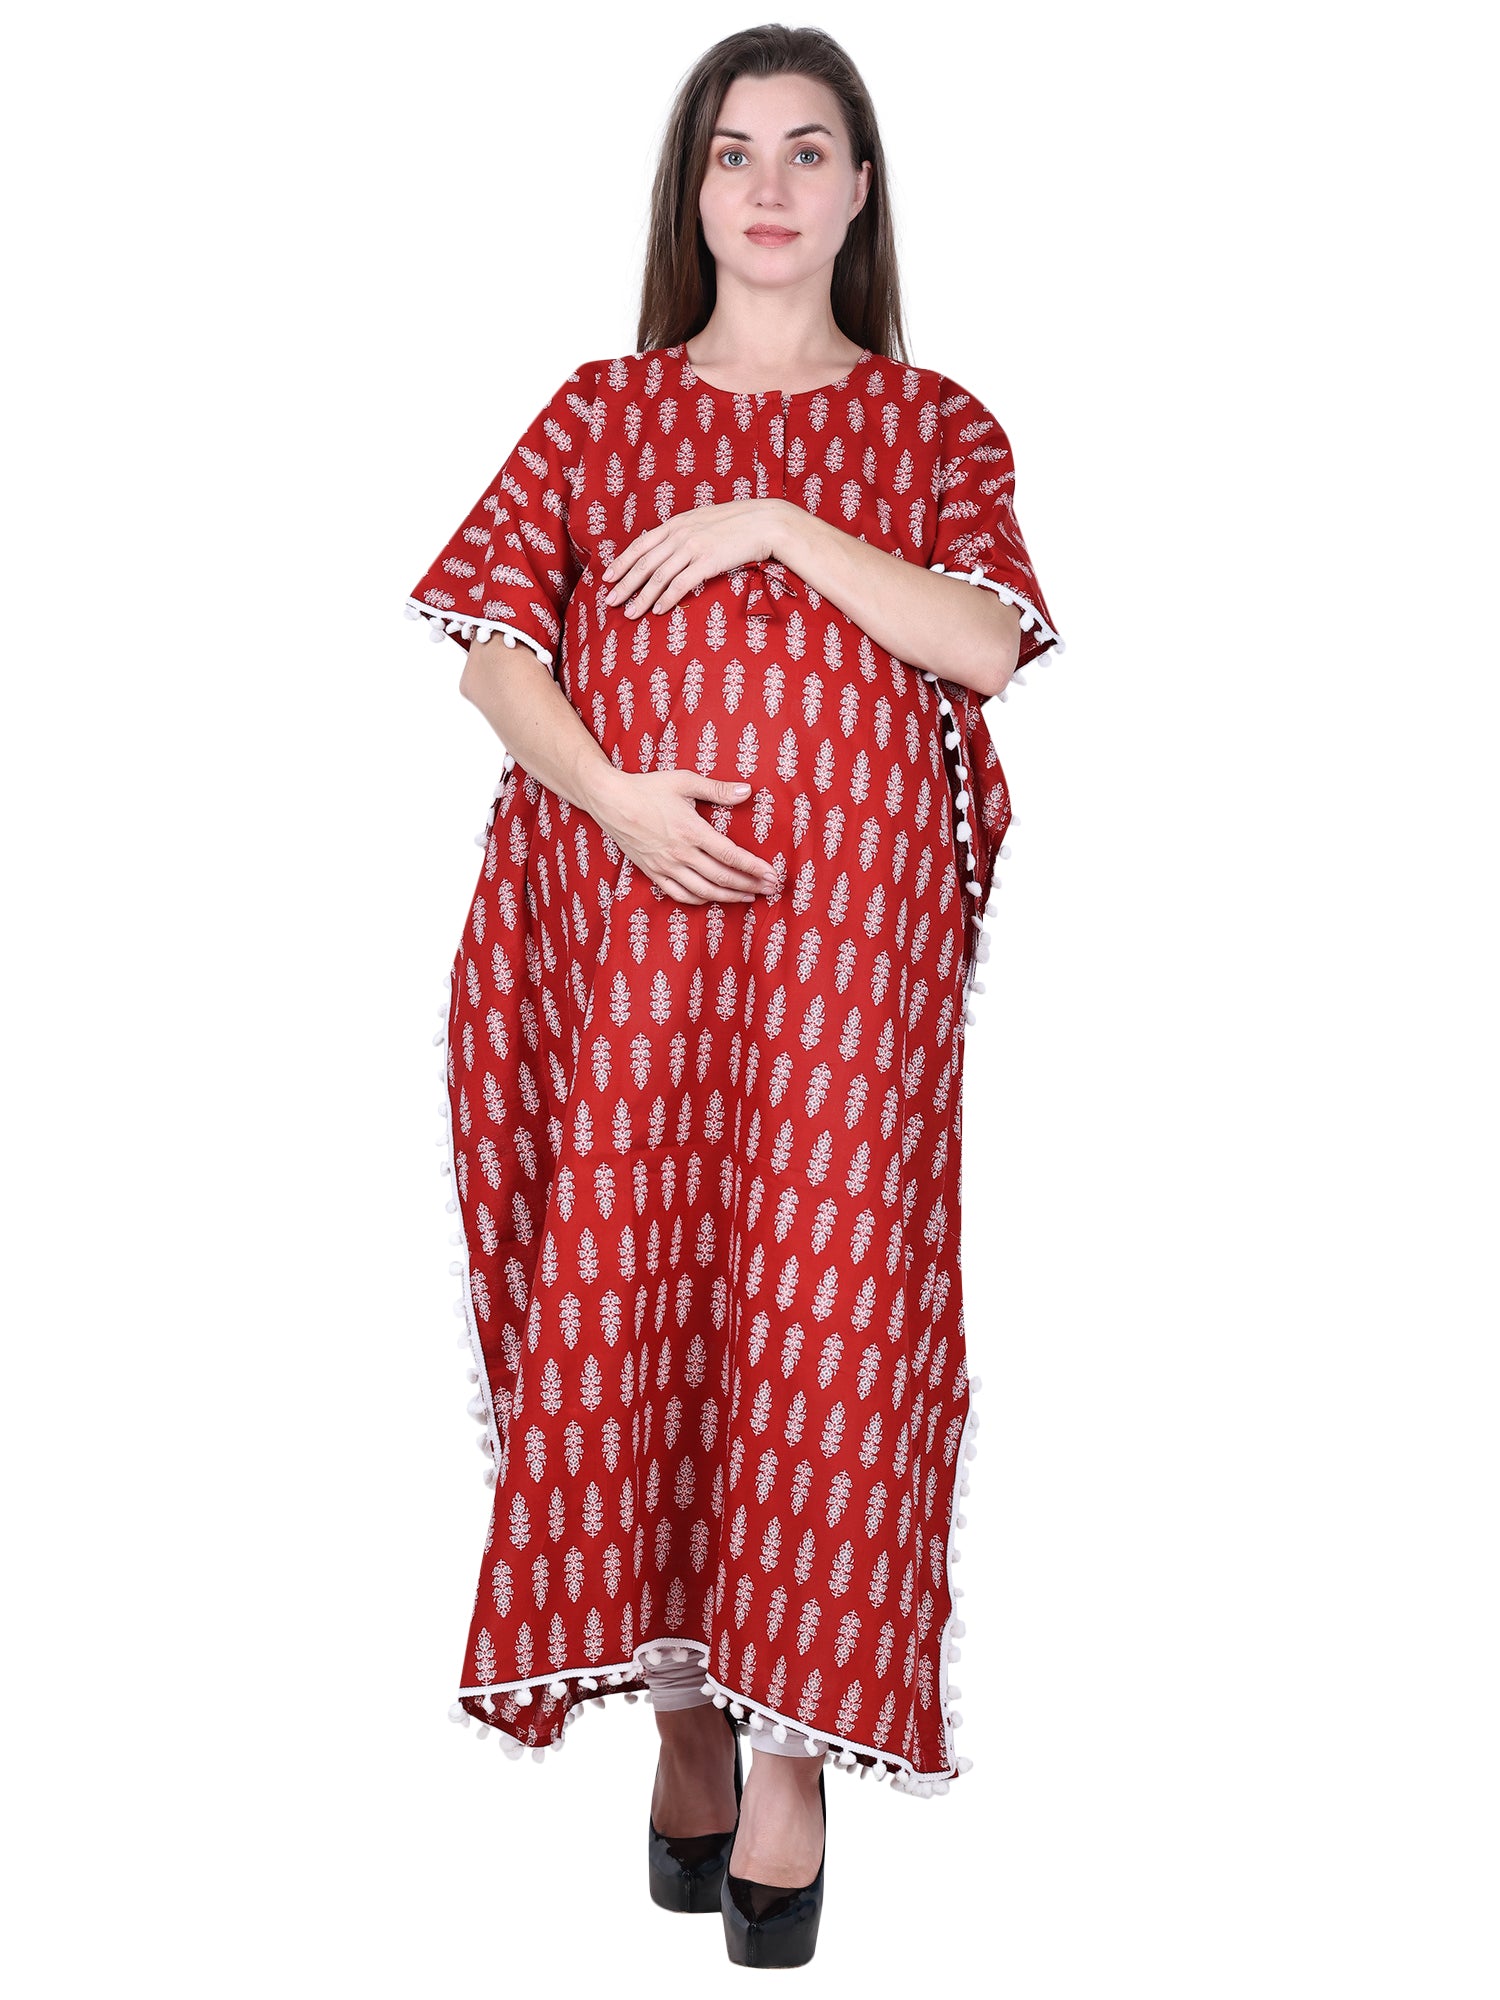 New Custom Ecommerce Development for Maternity Dresses - MomToBe.in